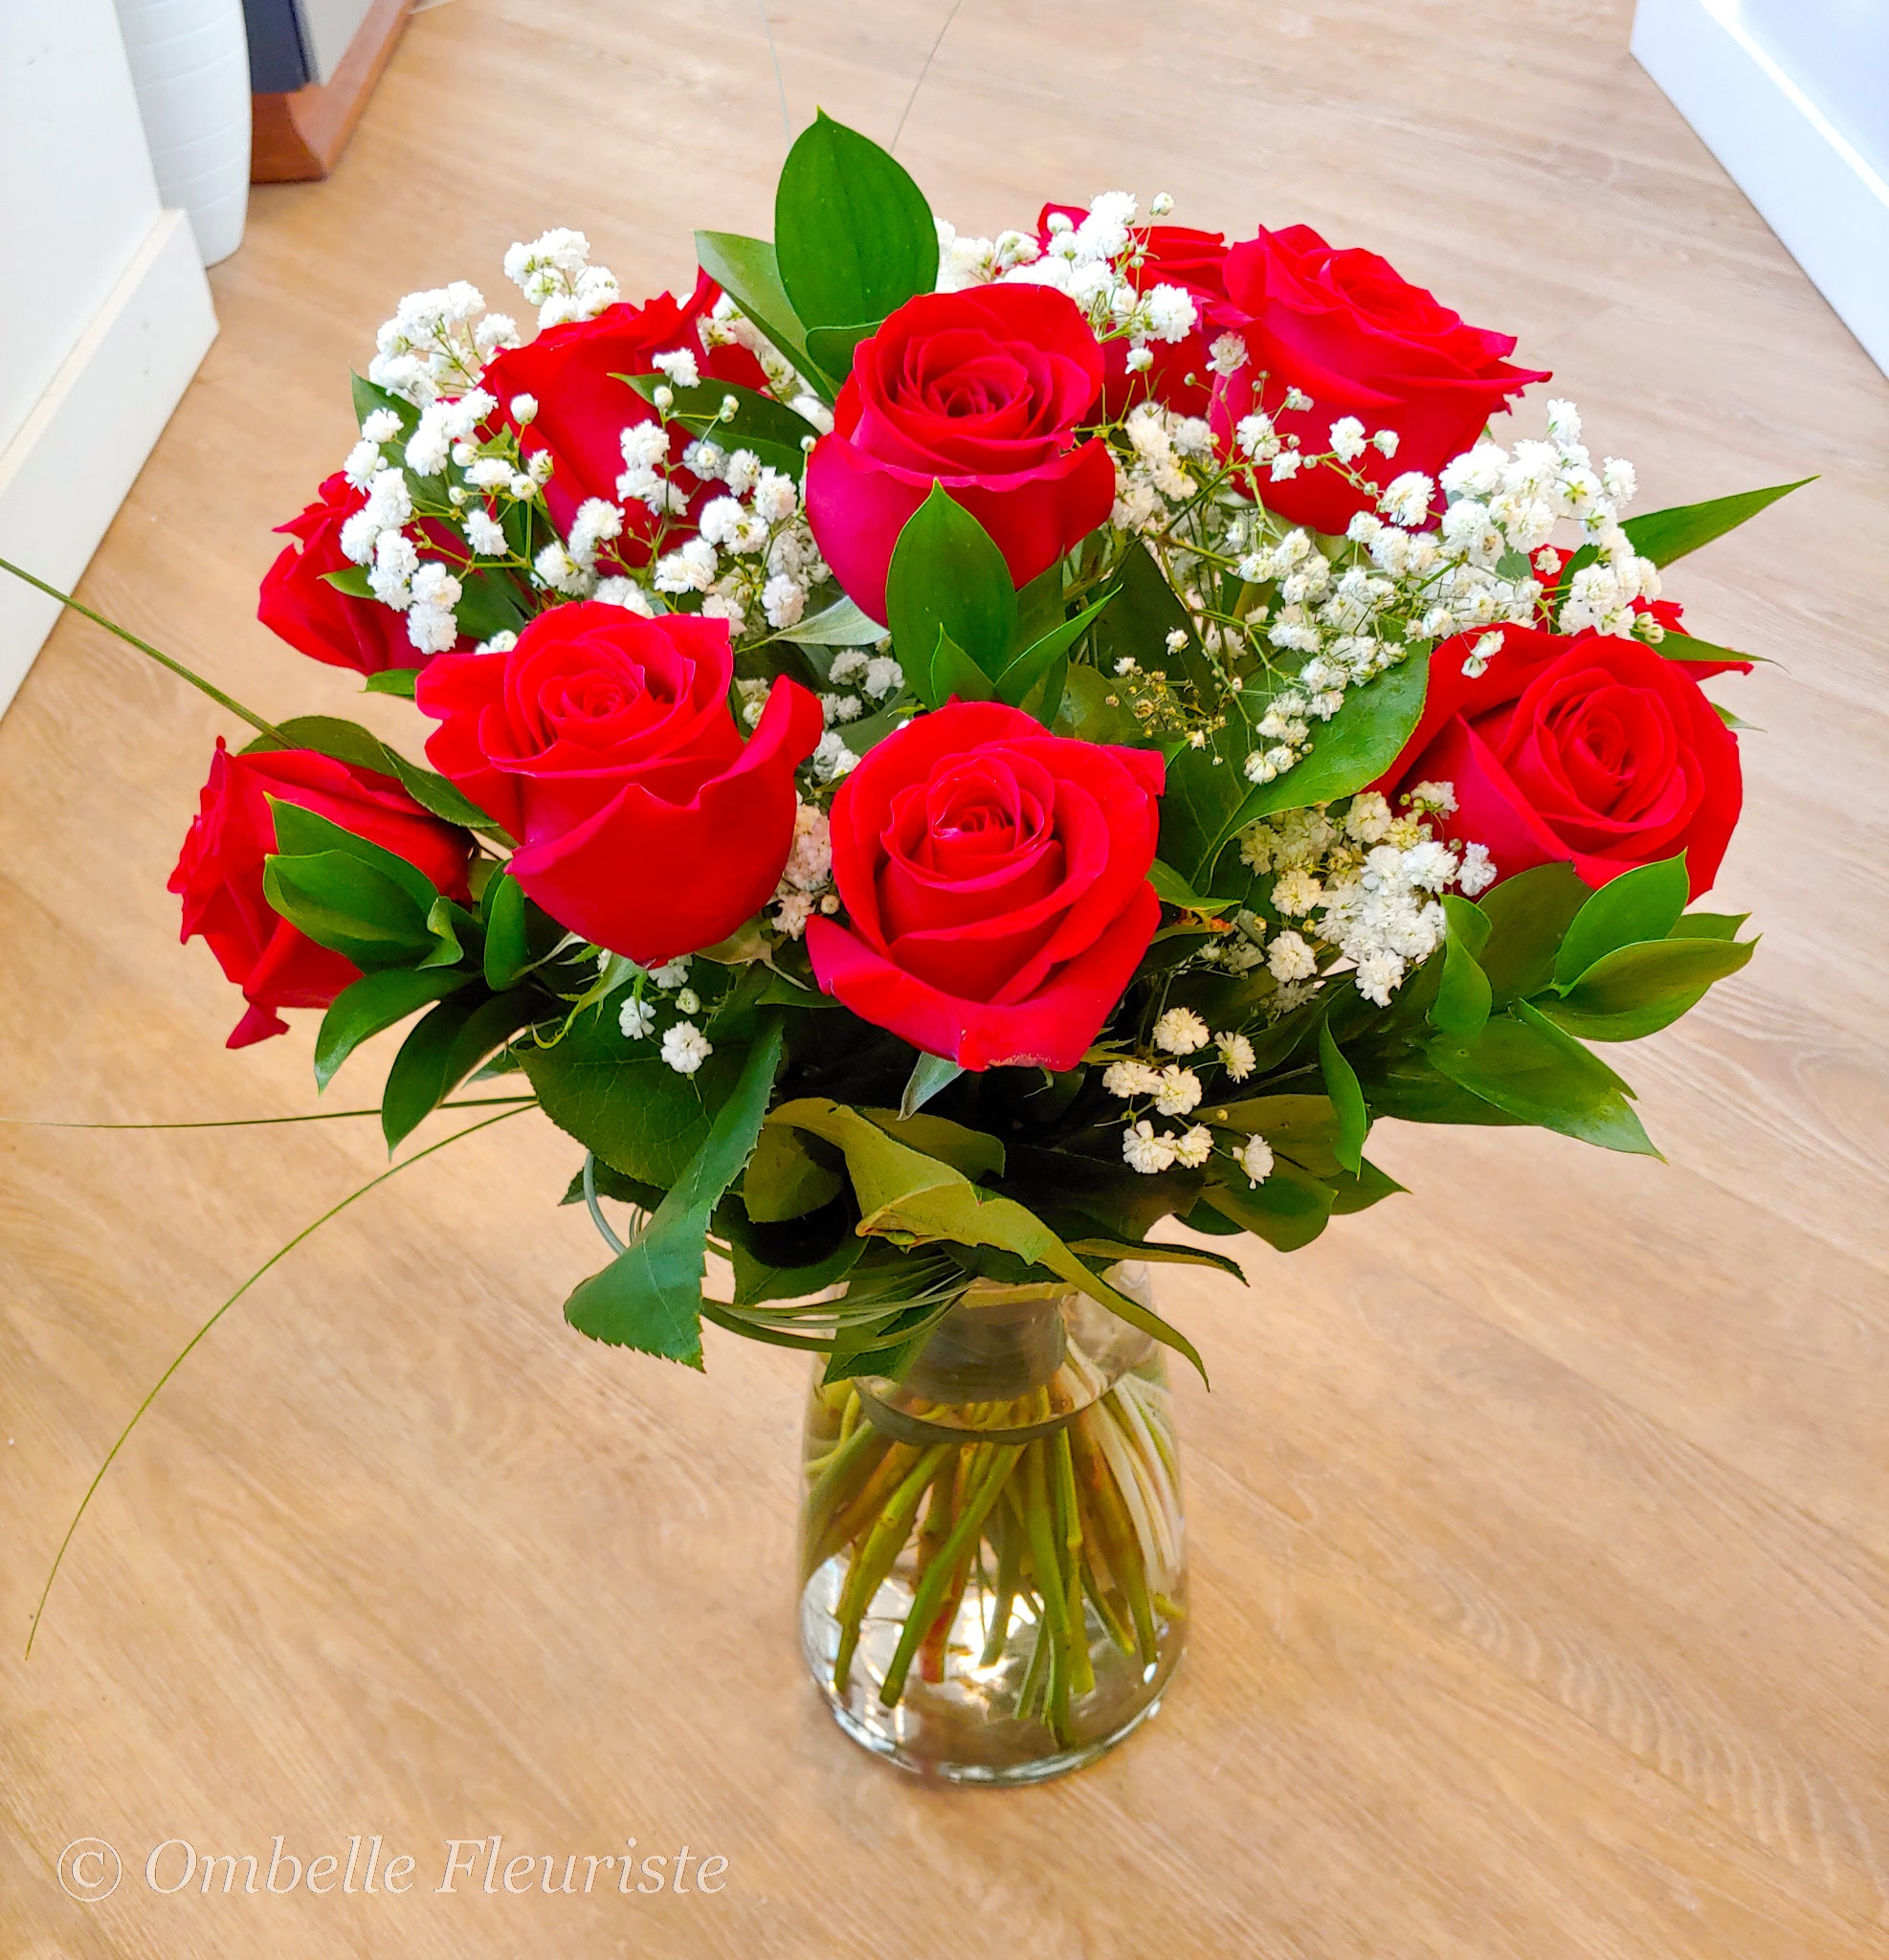 Ombelle Fleuriste - Bouquet de fleurs - Bouquet de 12 roses